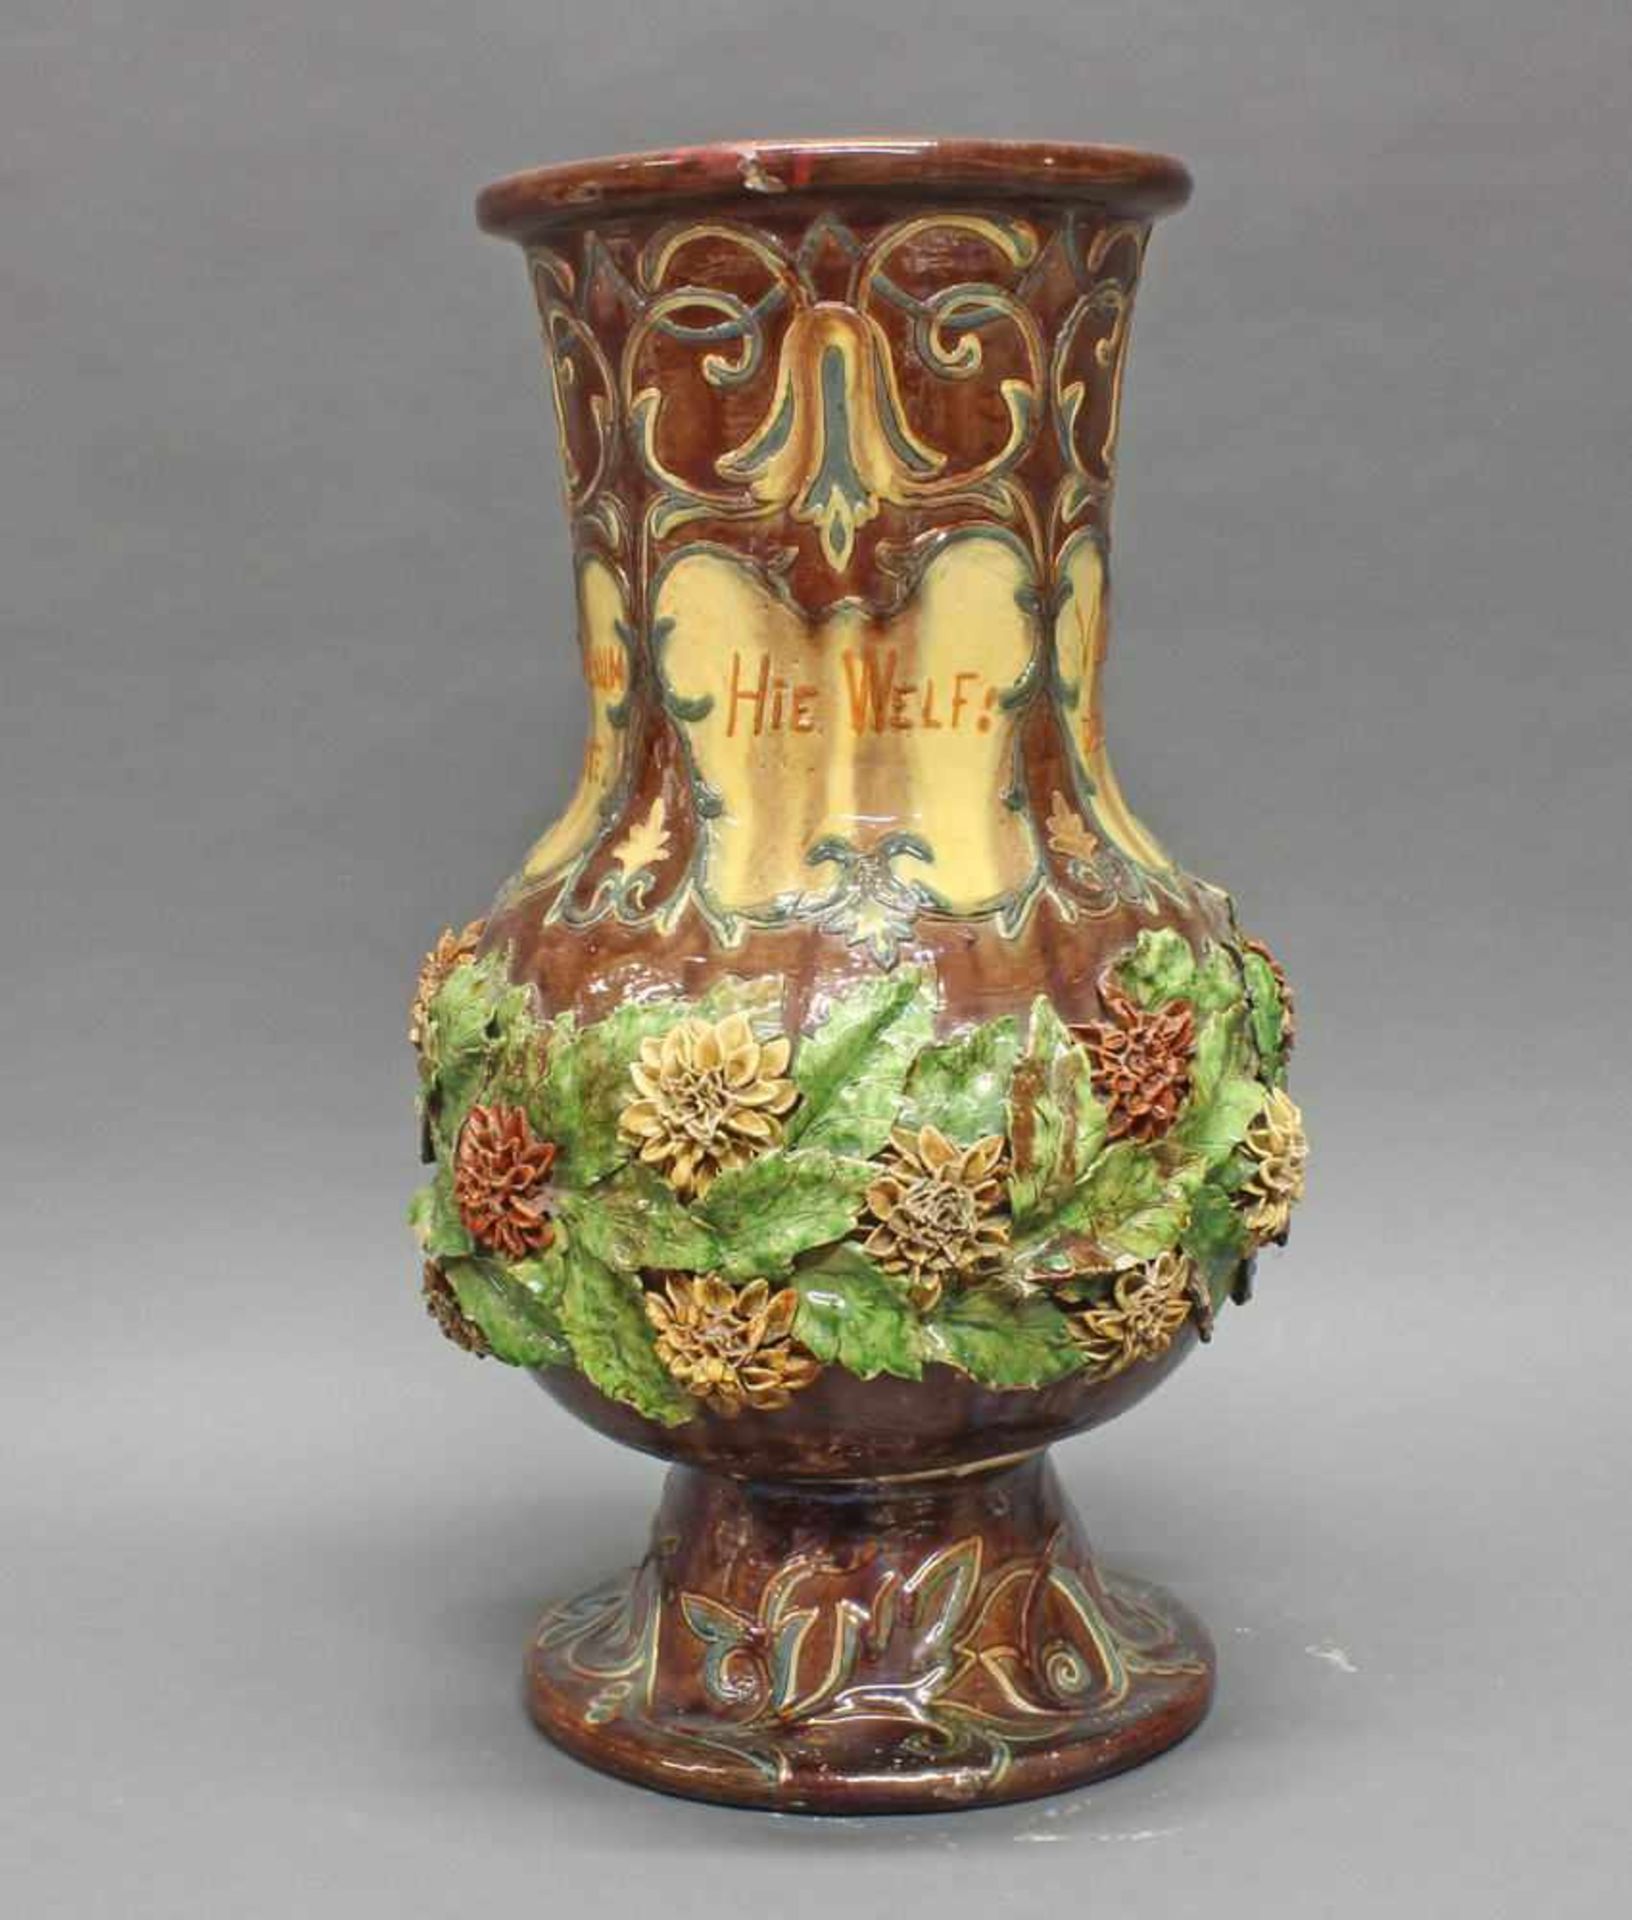 Vase, Keramik, Flandern, 1889, signiert L. Maes Thornhout 1889, polychrom, mit aufgesetzten Blüten - Image 7 of 10